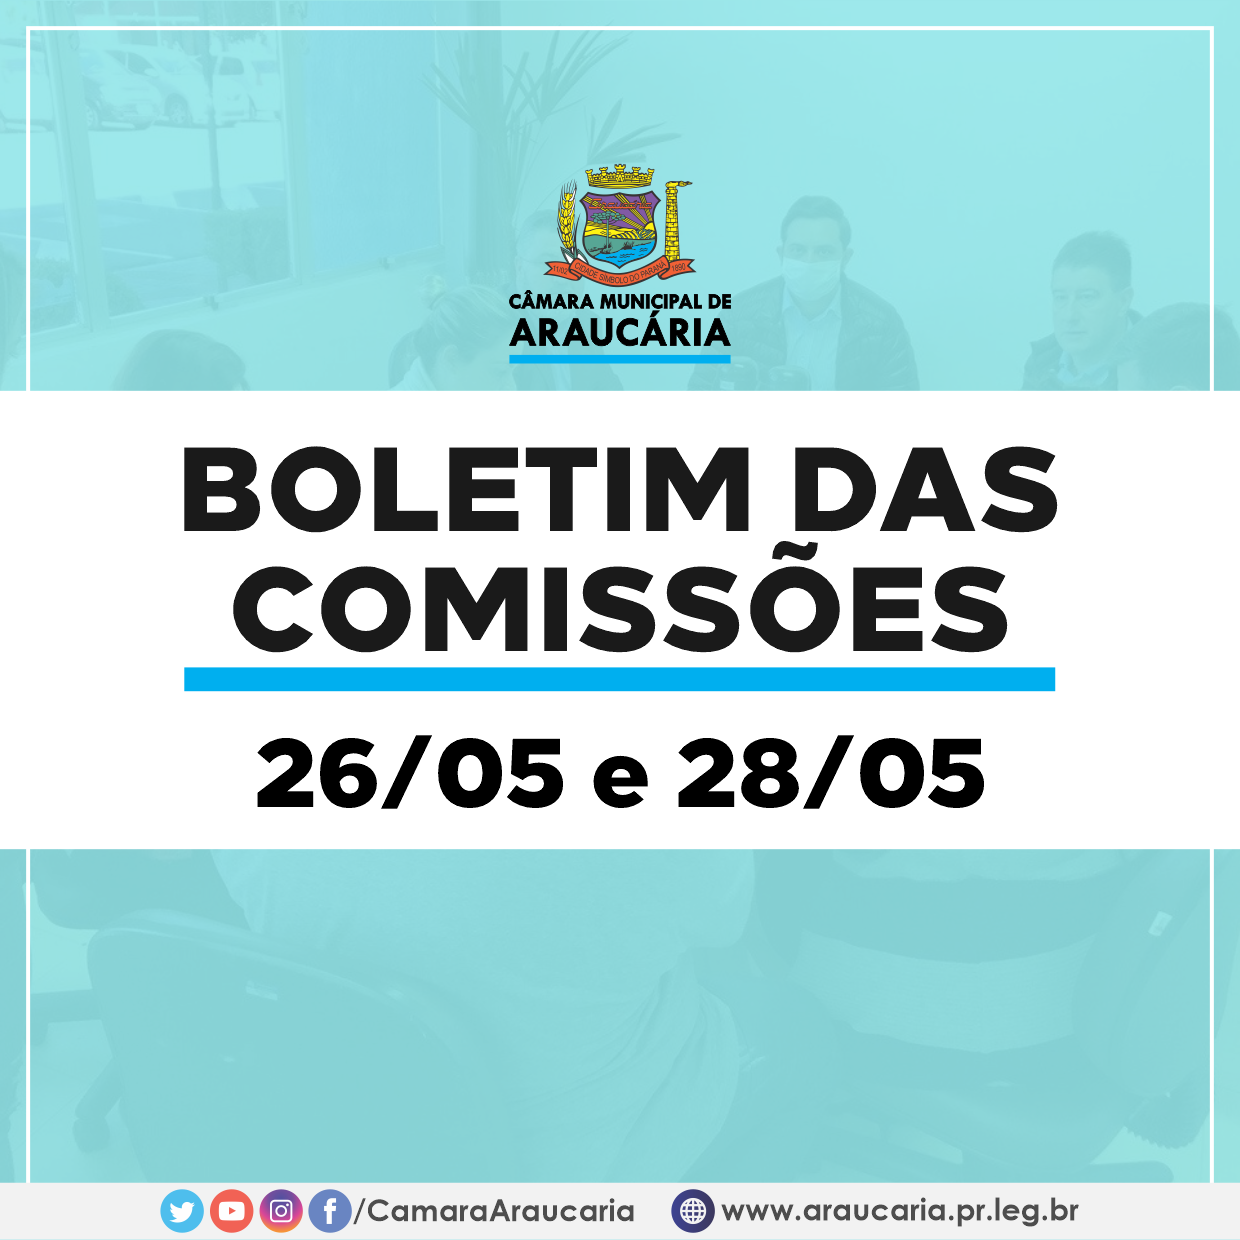 Boletim das Comissões – Saiba como foram as reuniões do dia 26 e 28 de maio